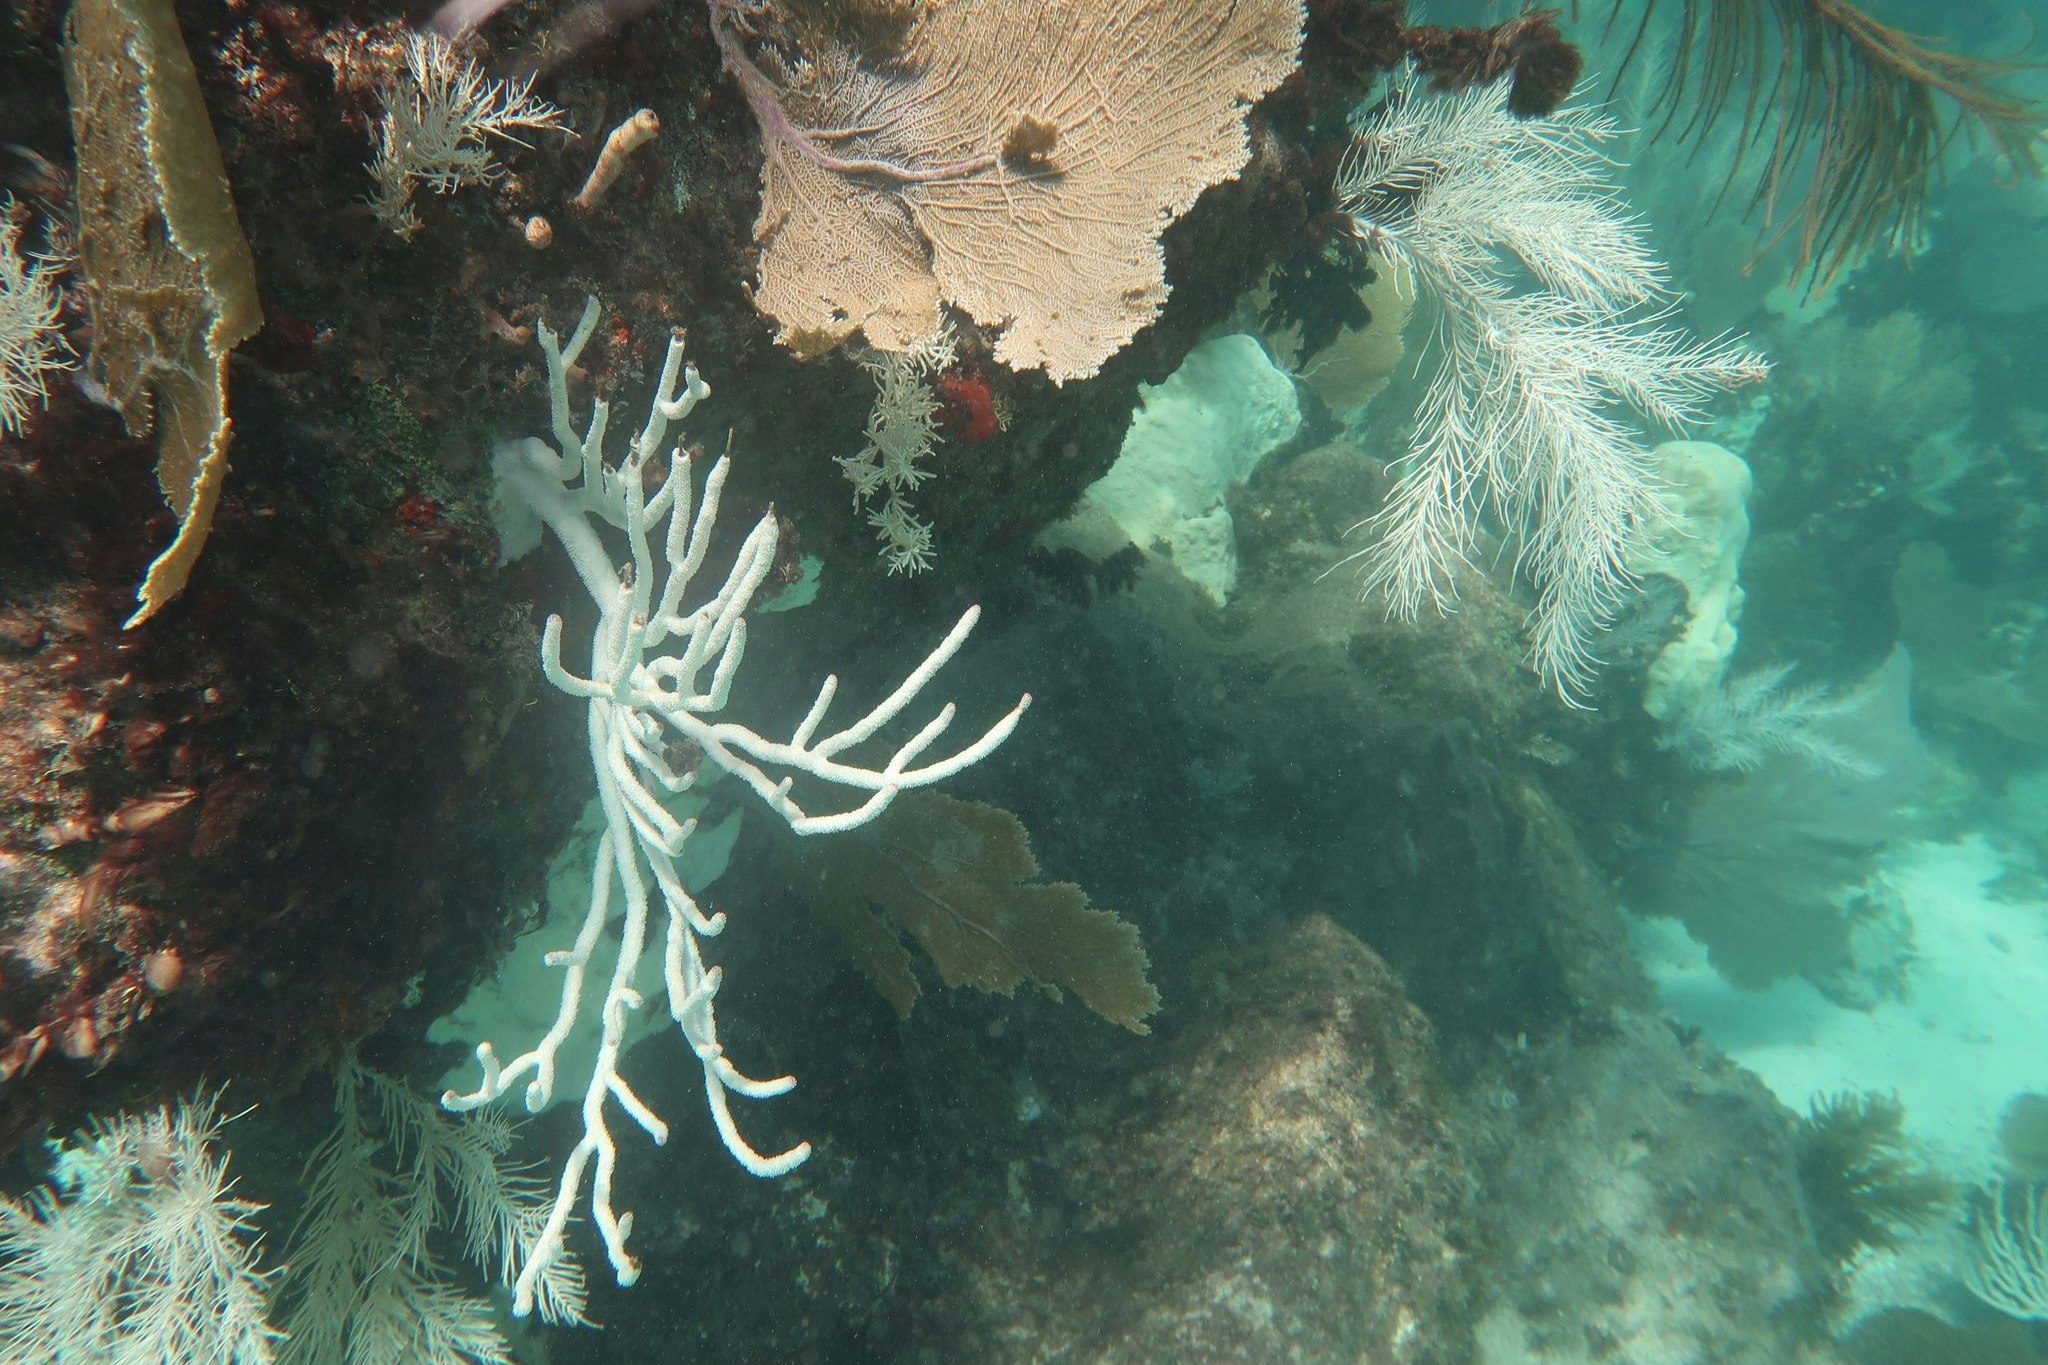 von australien bis florida: meere erleben weltweit massive korallenbleiche